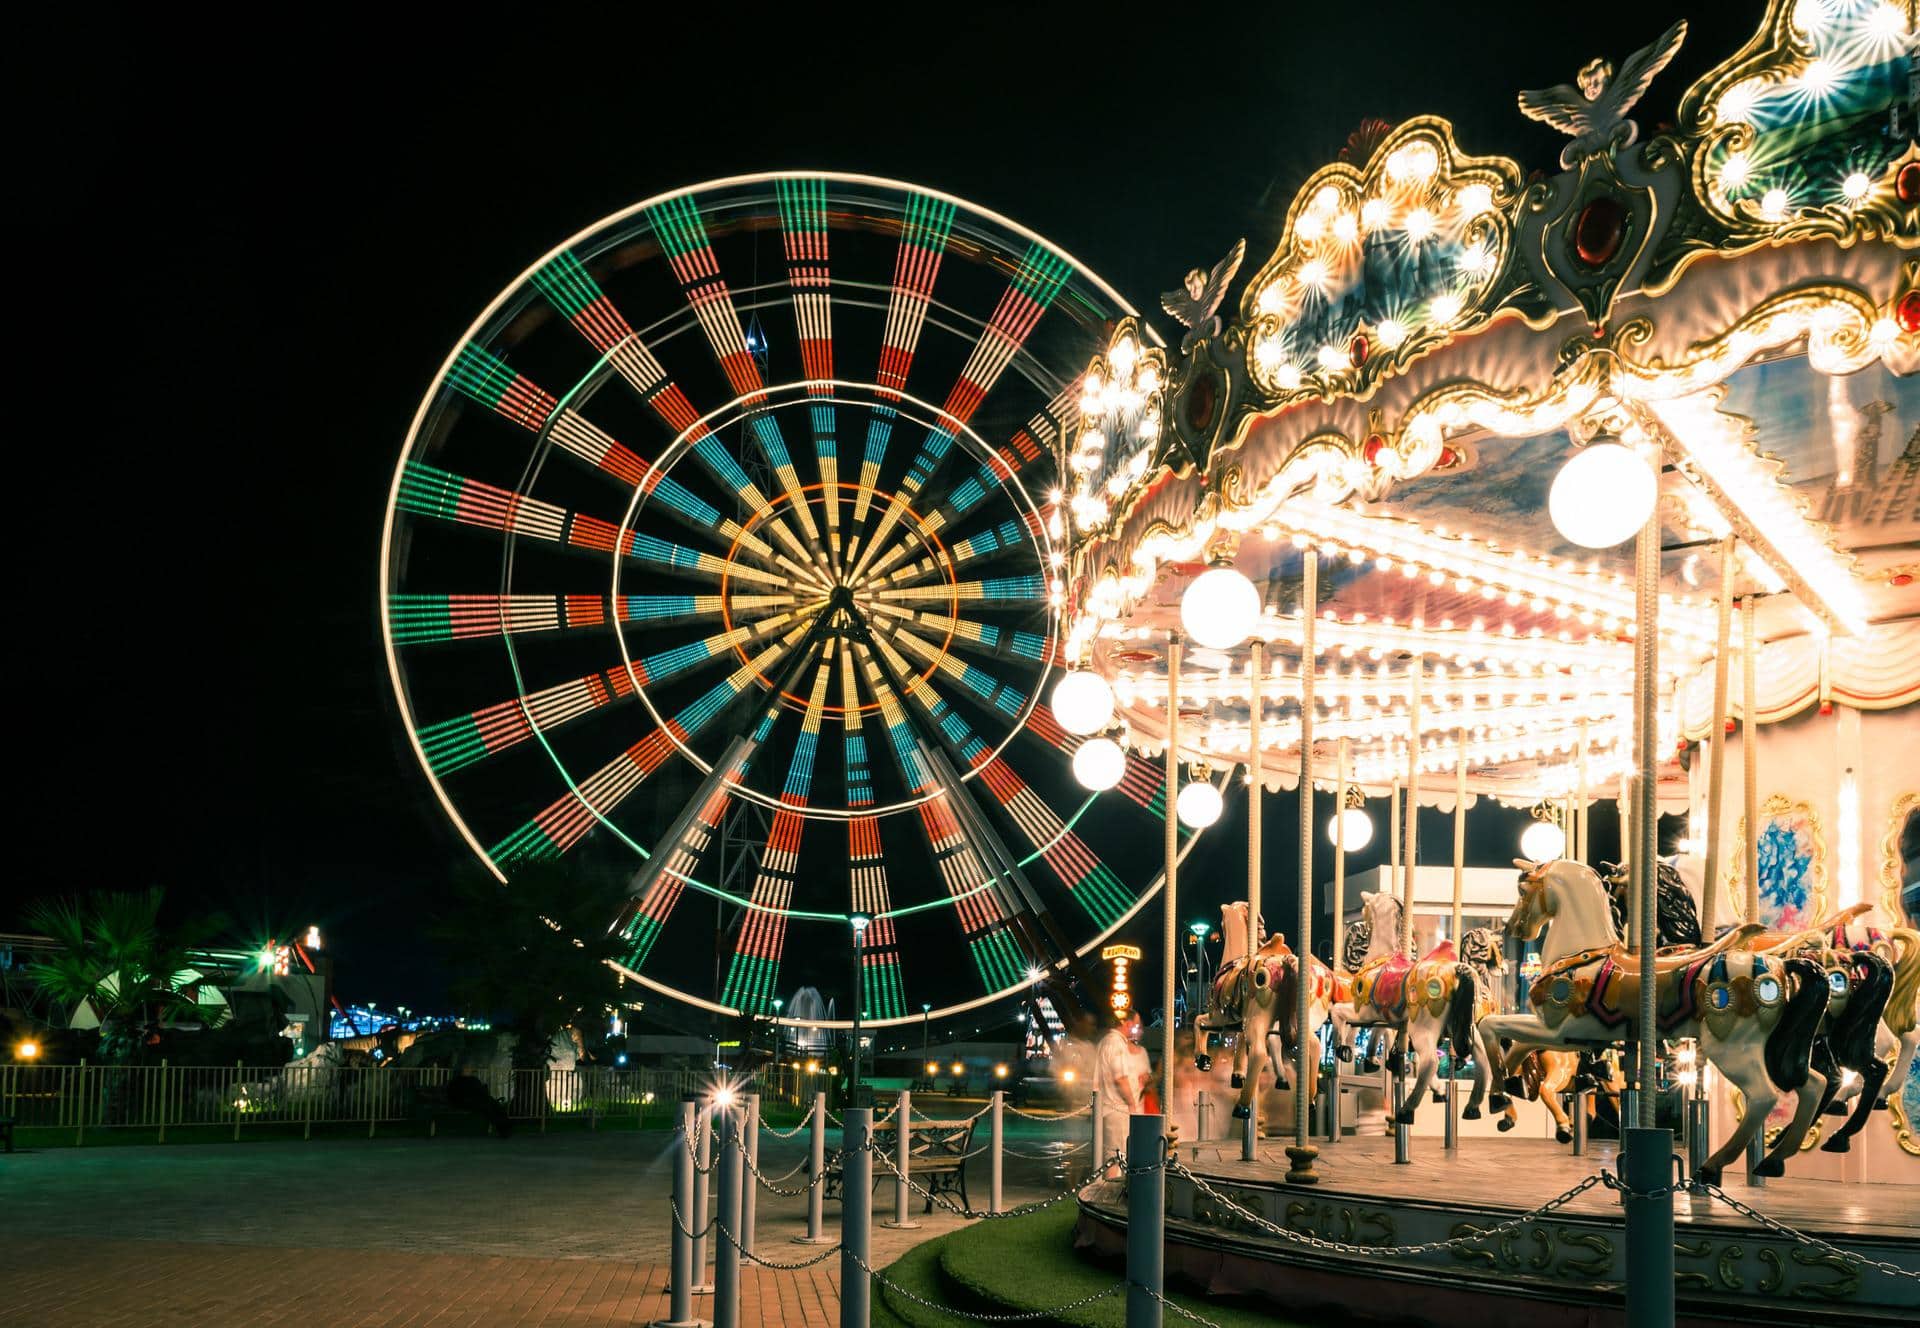 The heavenly feeling of BonBon-Land Amusement Park